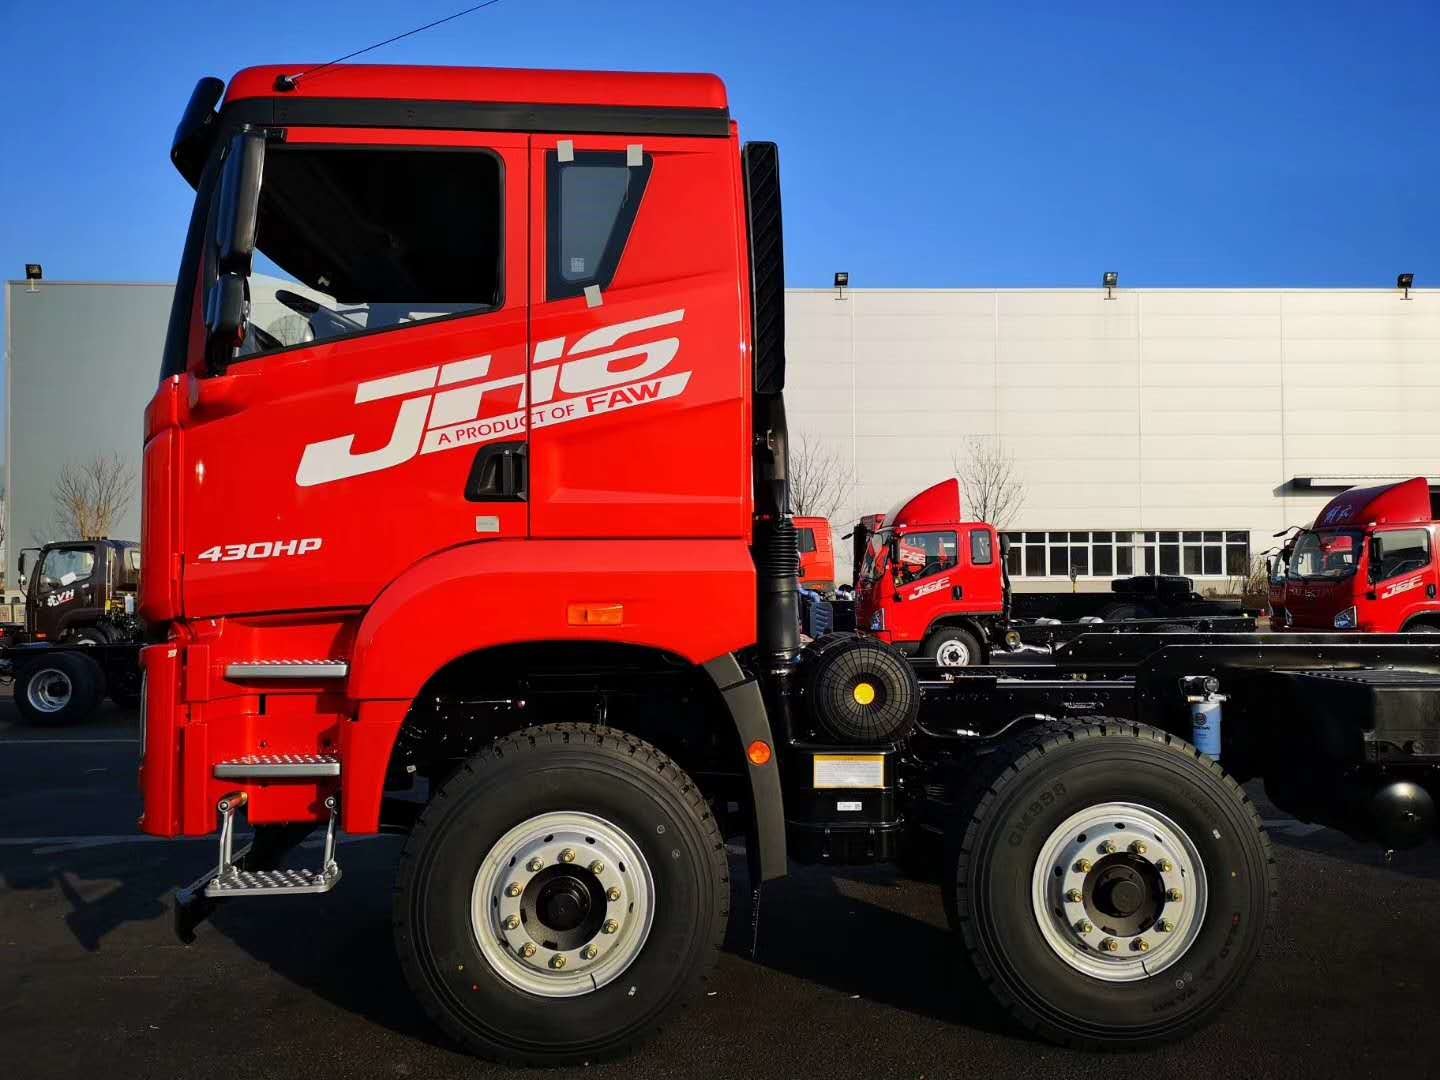 کامیون تریلر FAW JIEFANG JH6 6x4 سر 10 چرخ برای حمل و نقل / تریلر کامیون تجاری